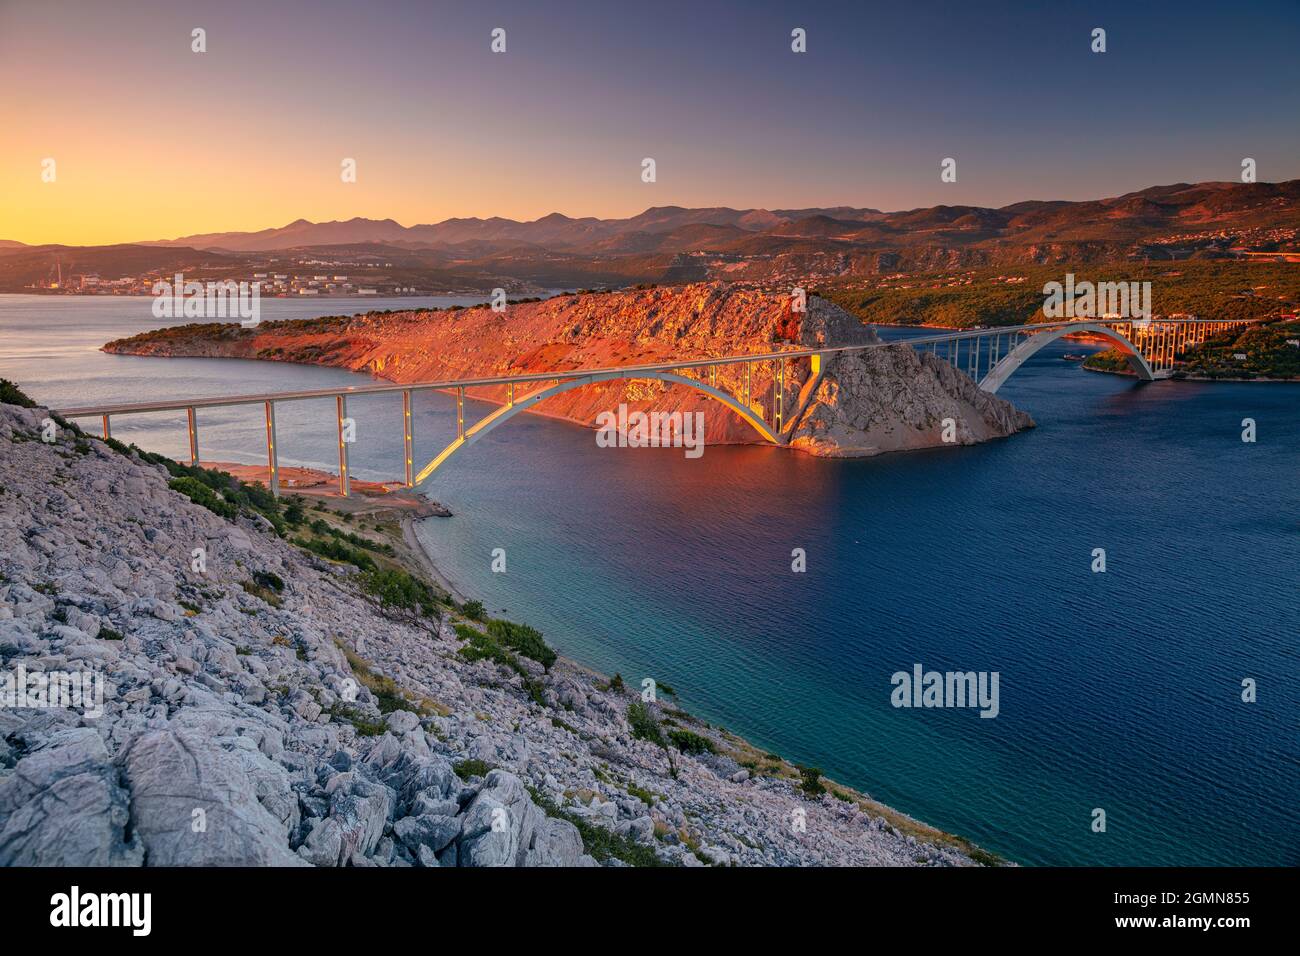 Krk-Brücke, Kroatien. Bild der Brücke von Krk, die die kroatische Insel Krk mit dem Festland bei schönem Sonnenuntergang verbindet. Stockfoto